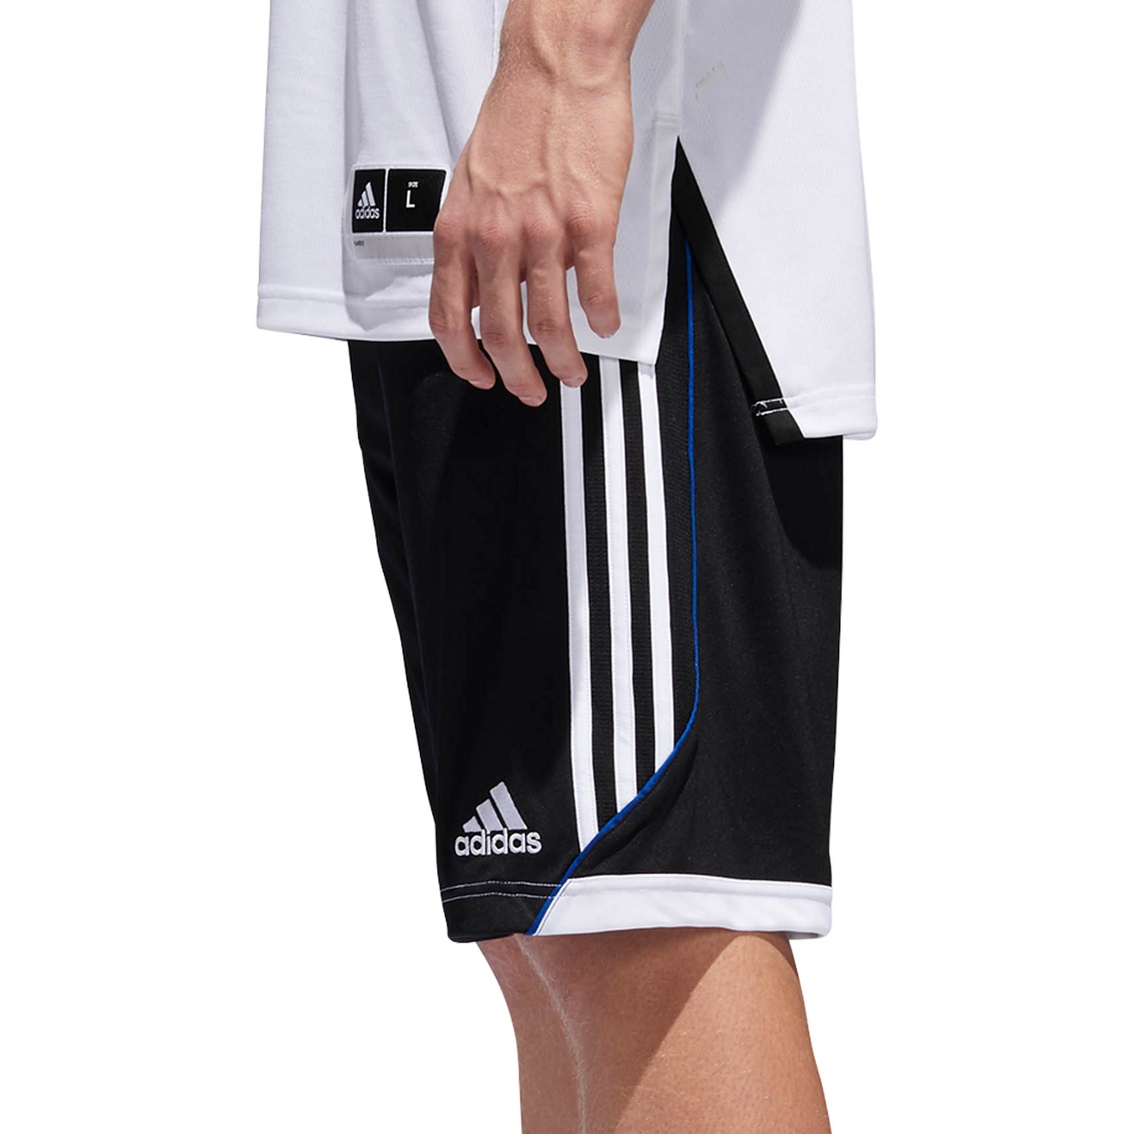 adidas 3G Speed Shorts - Image 3 of 4